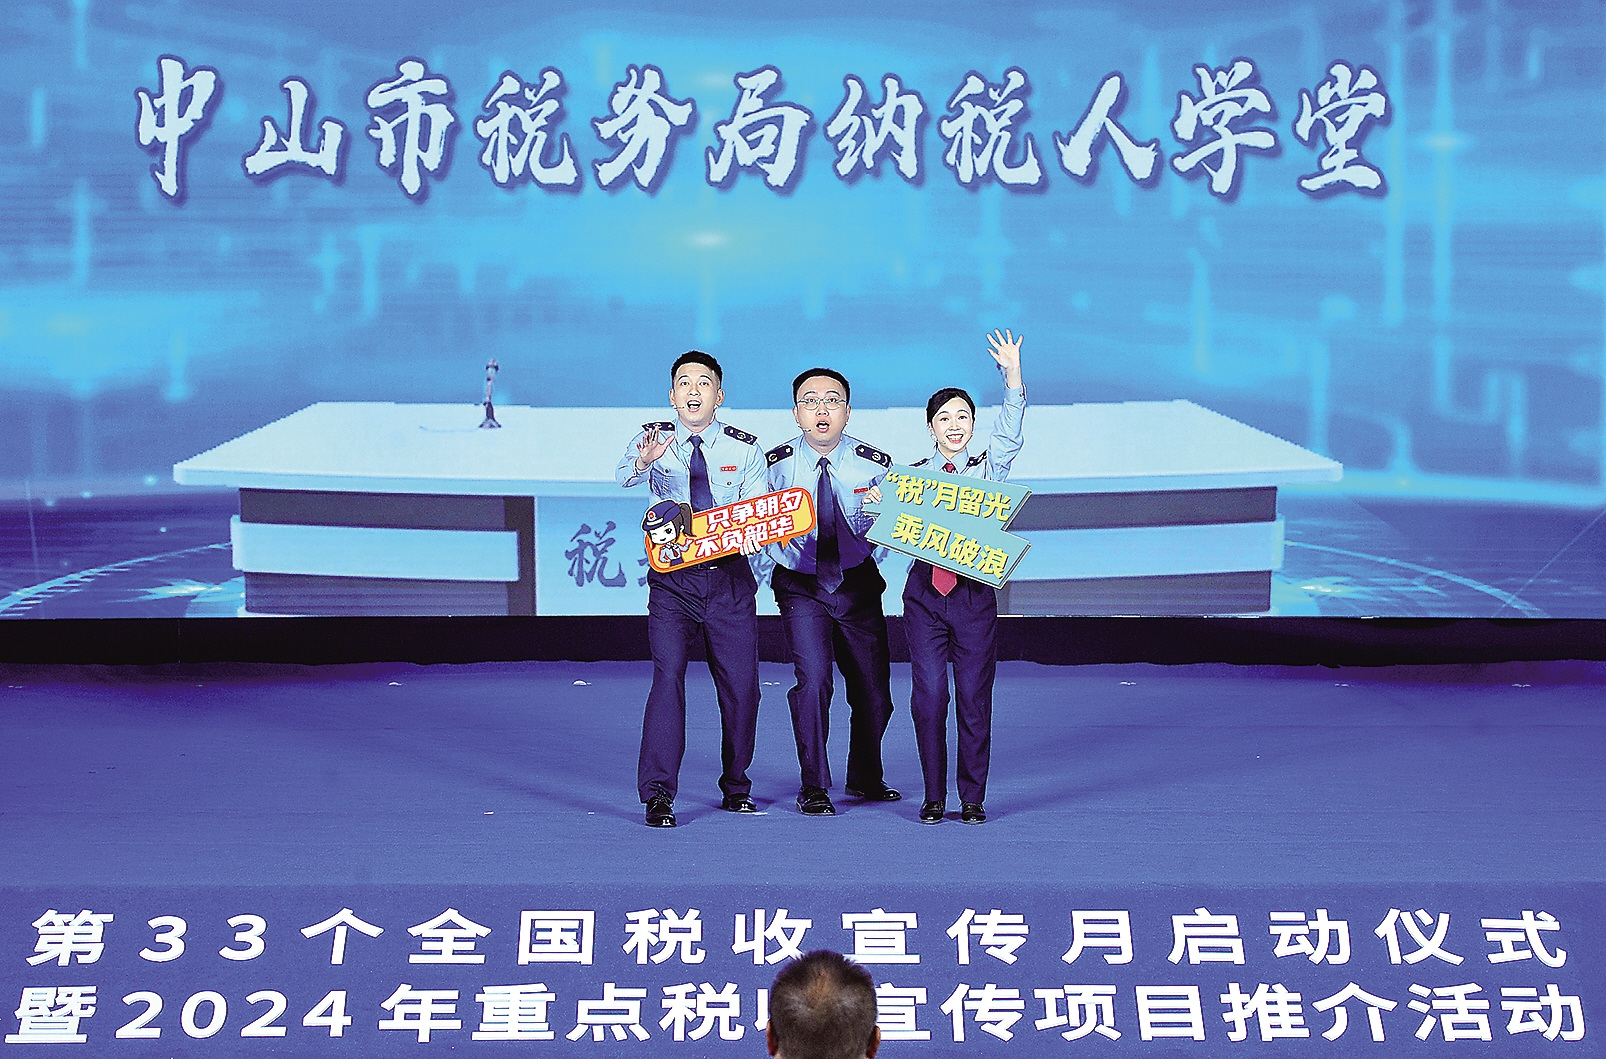 中山市税务局情景剧登上第33个全国税收宣传月启动仪式舞台